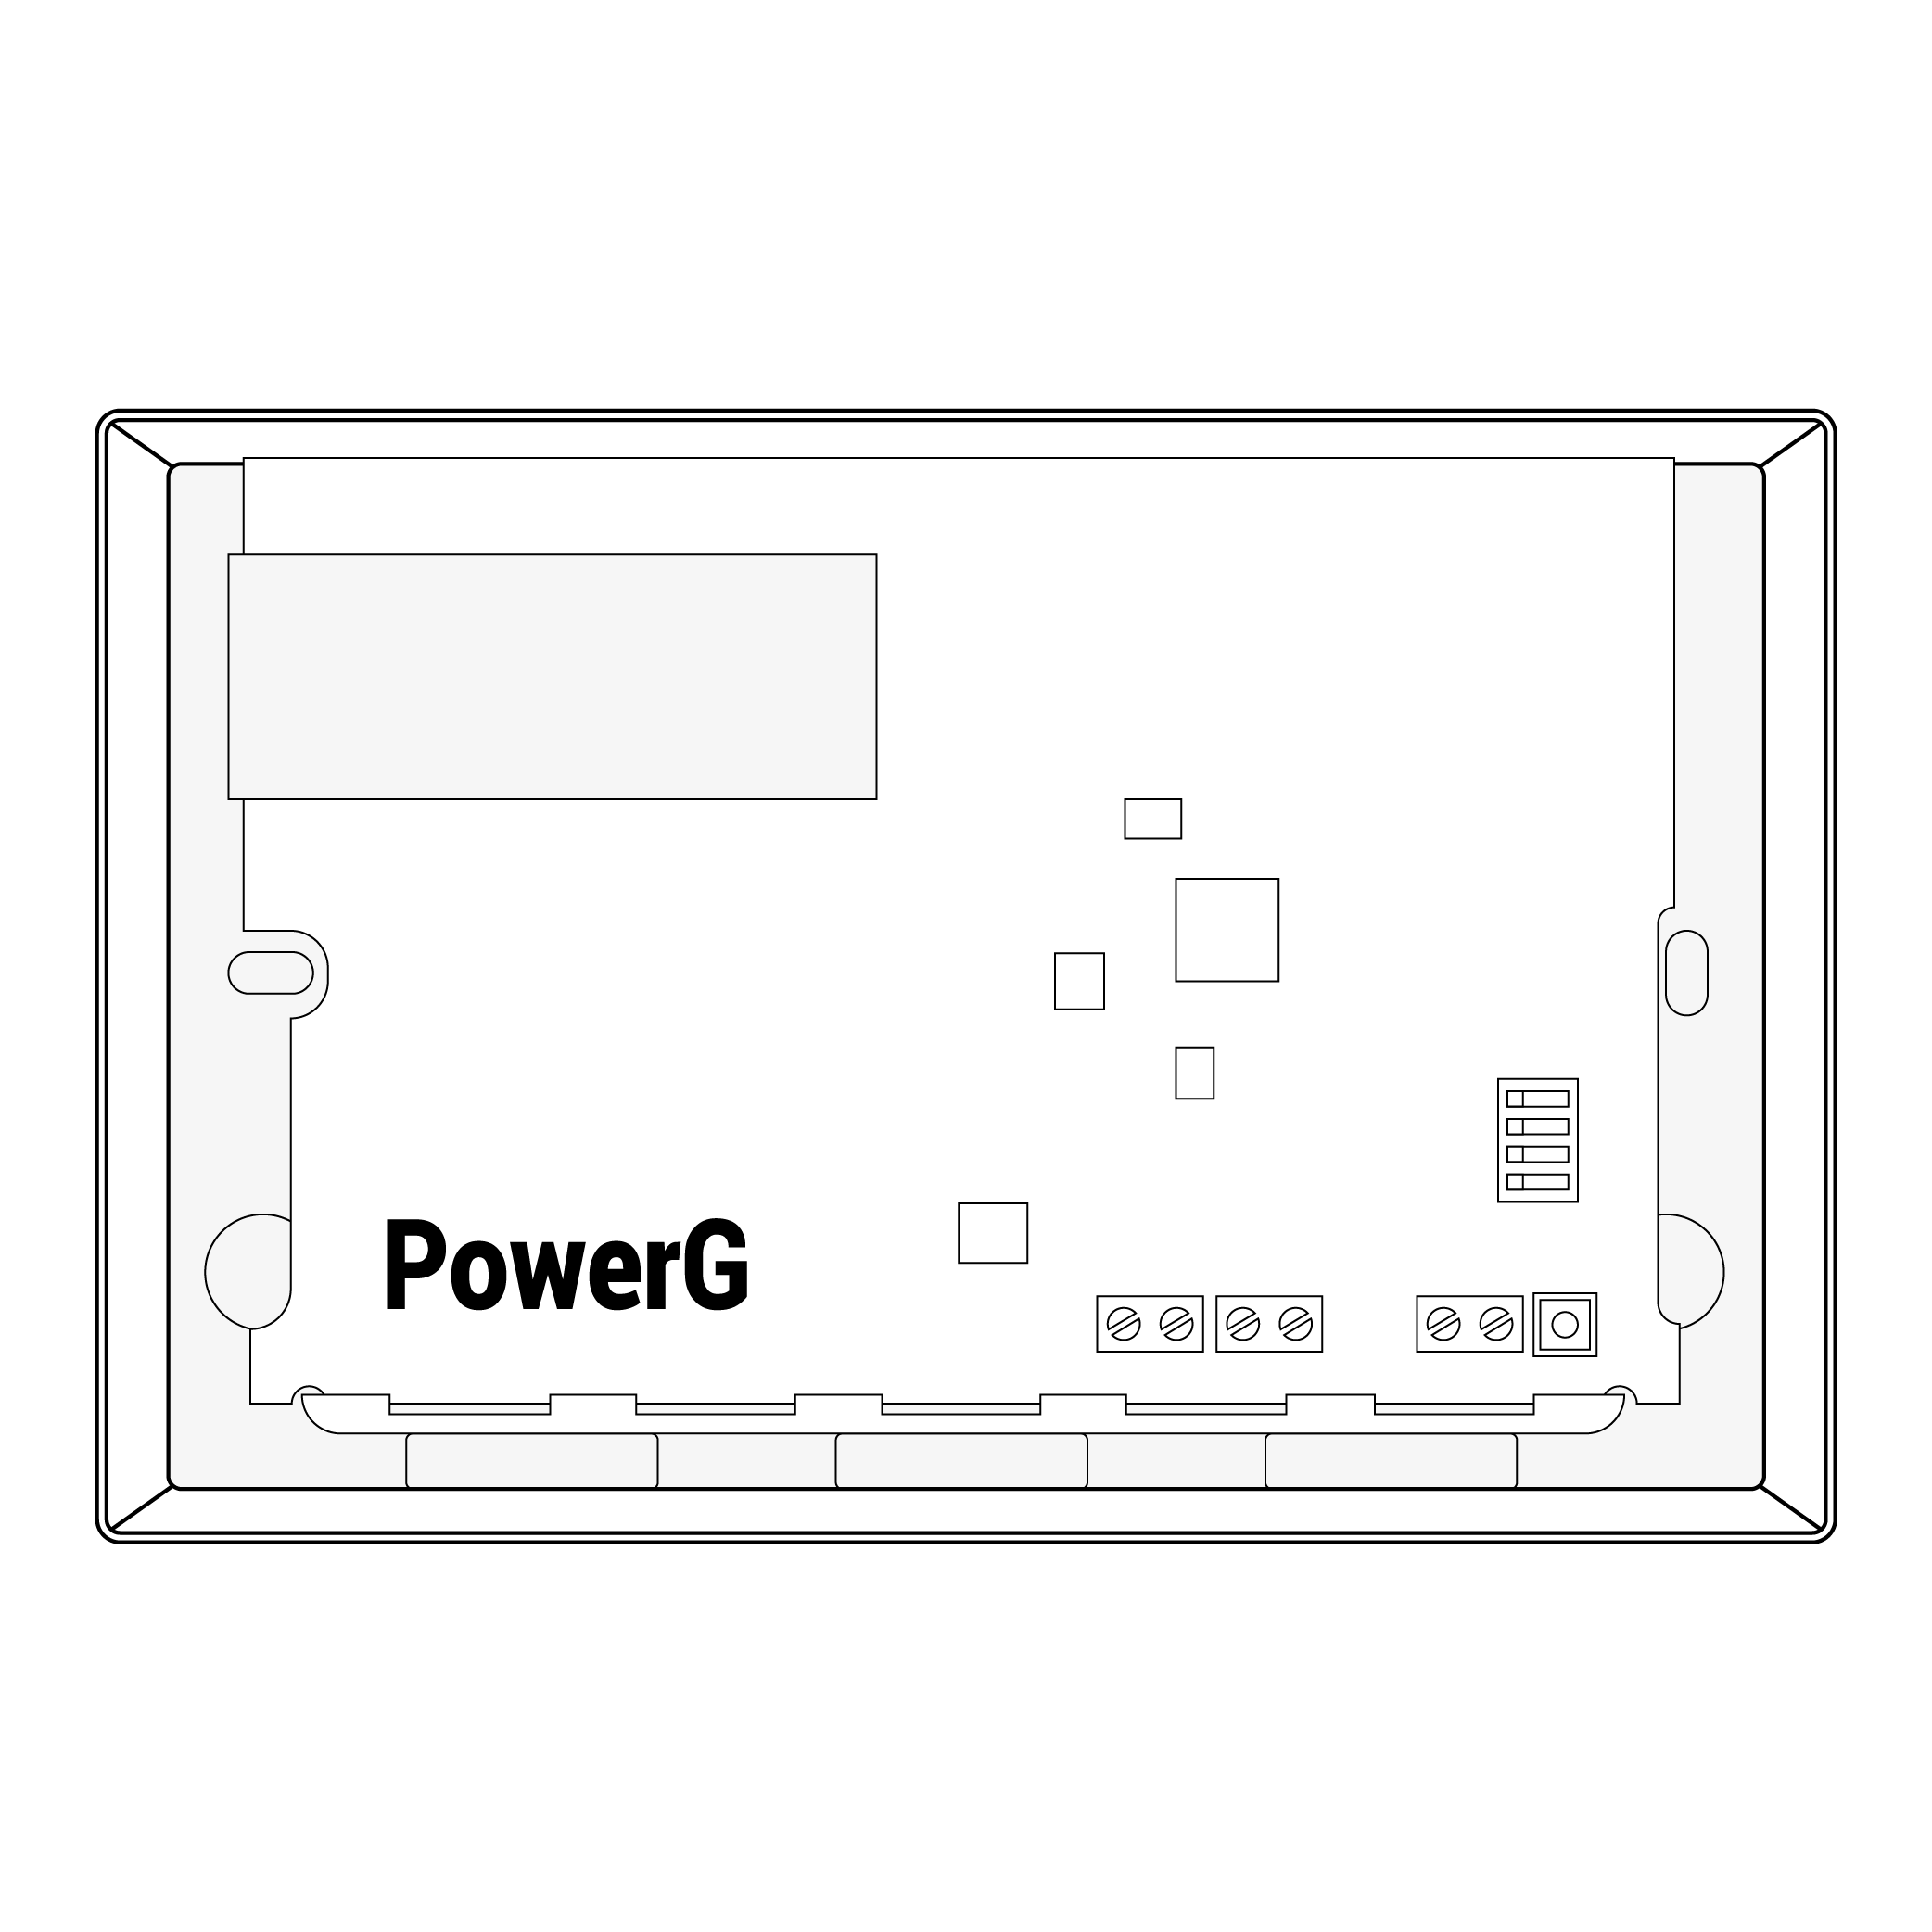 7. UNii Wireless Interface PowerG